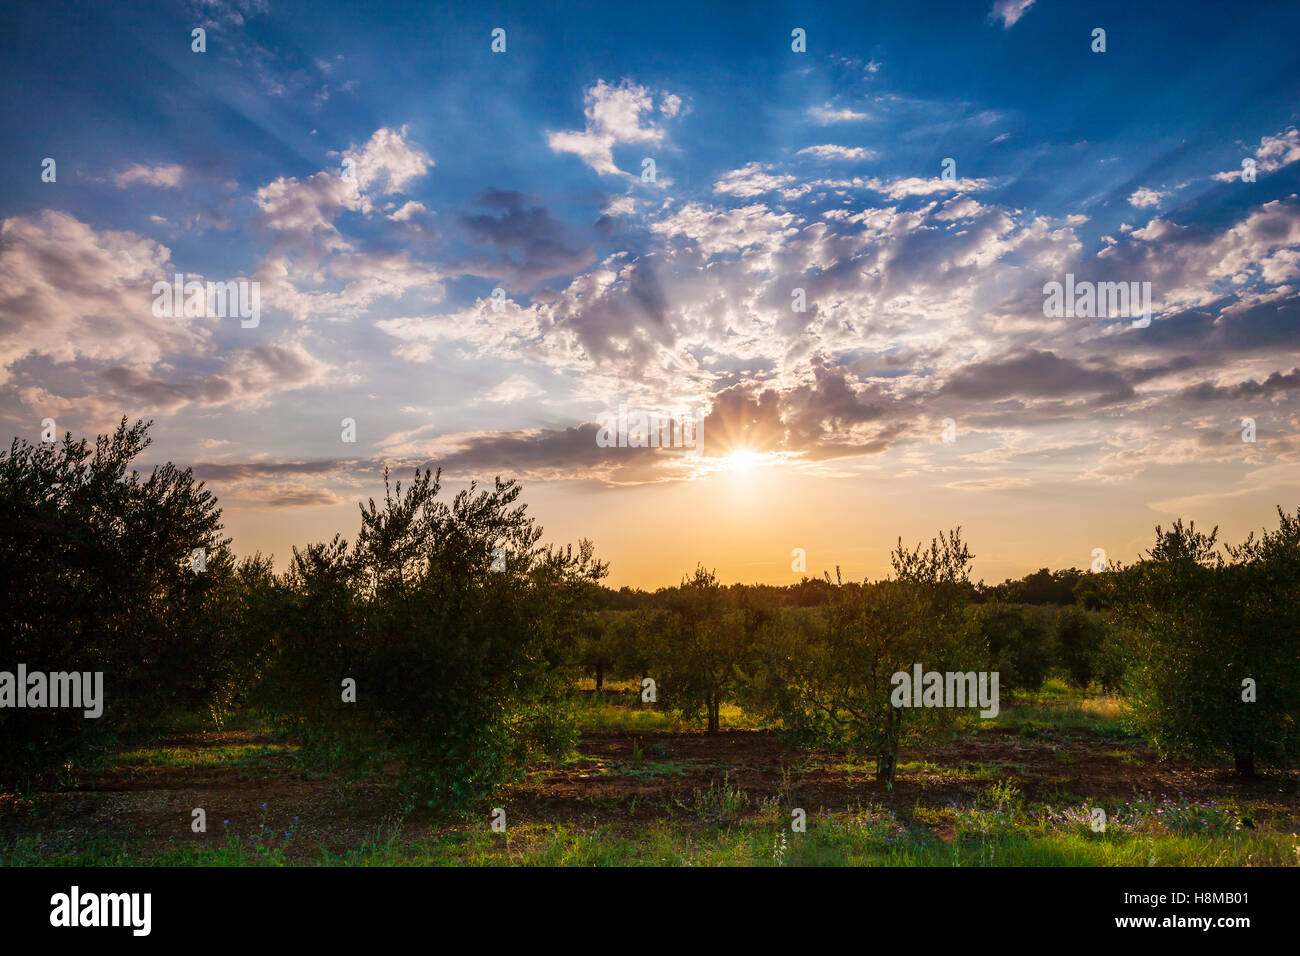 Olive plantation at sunset Stock Photo